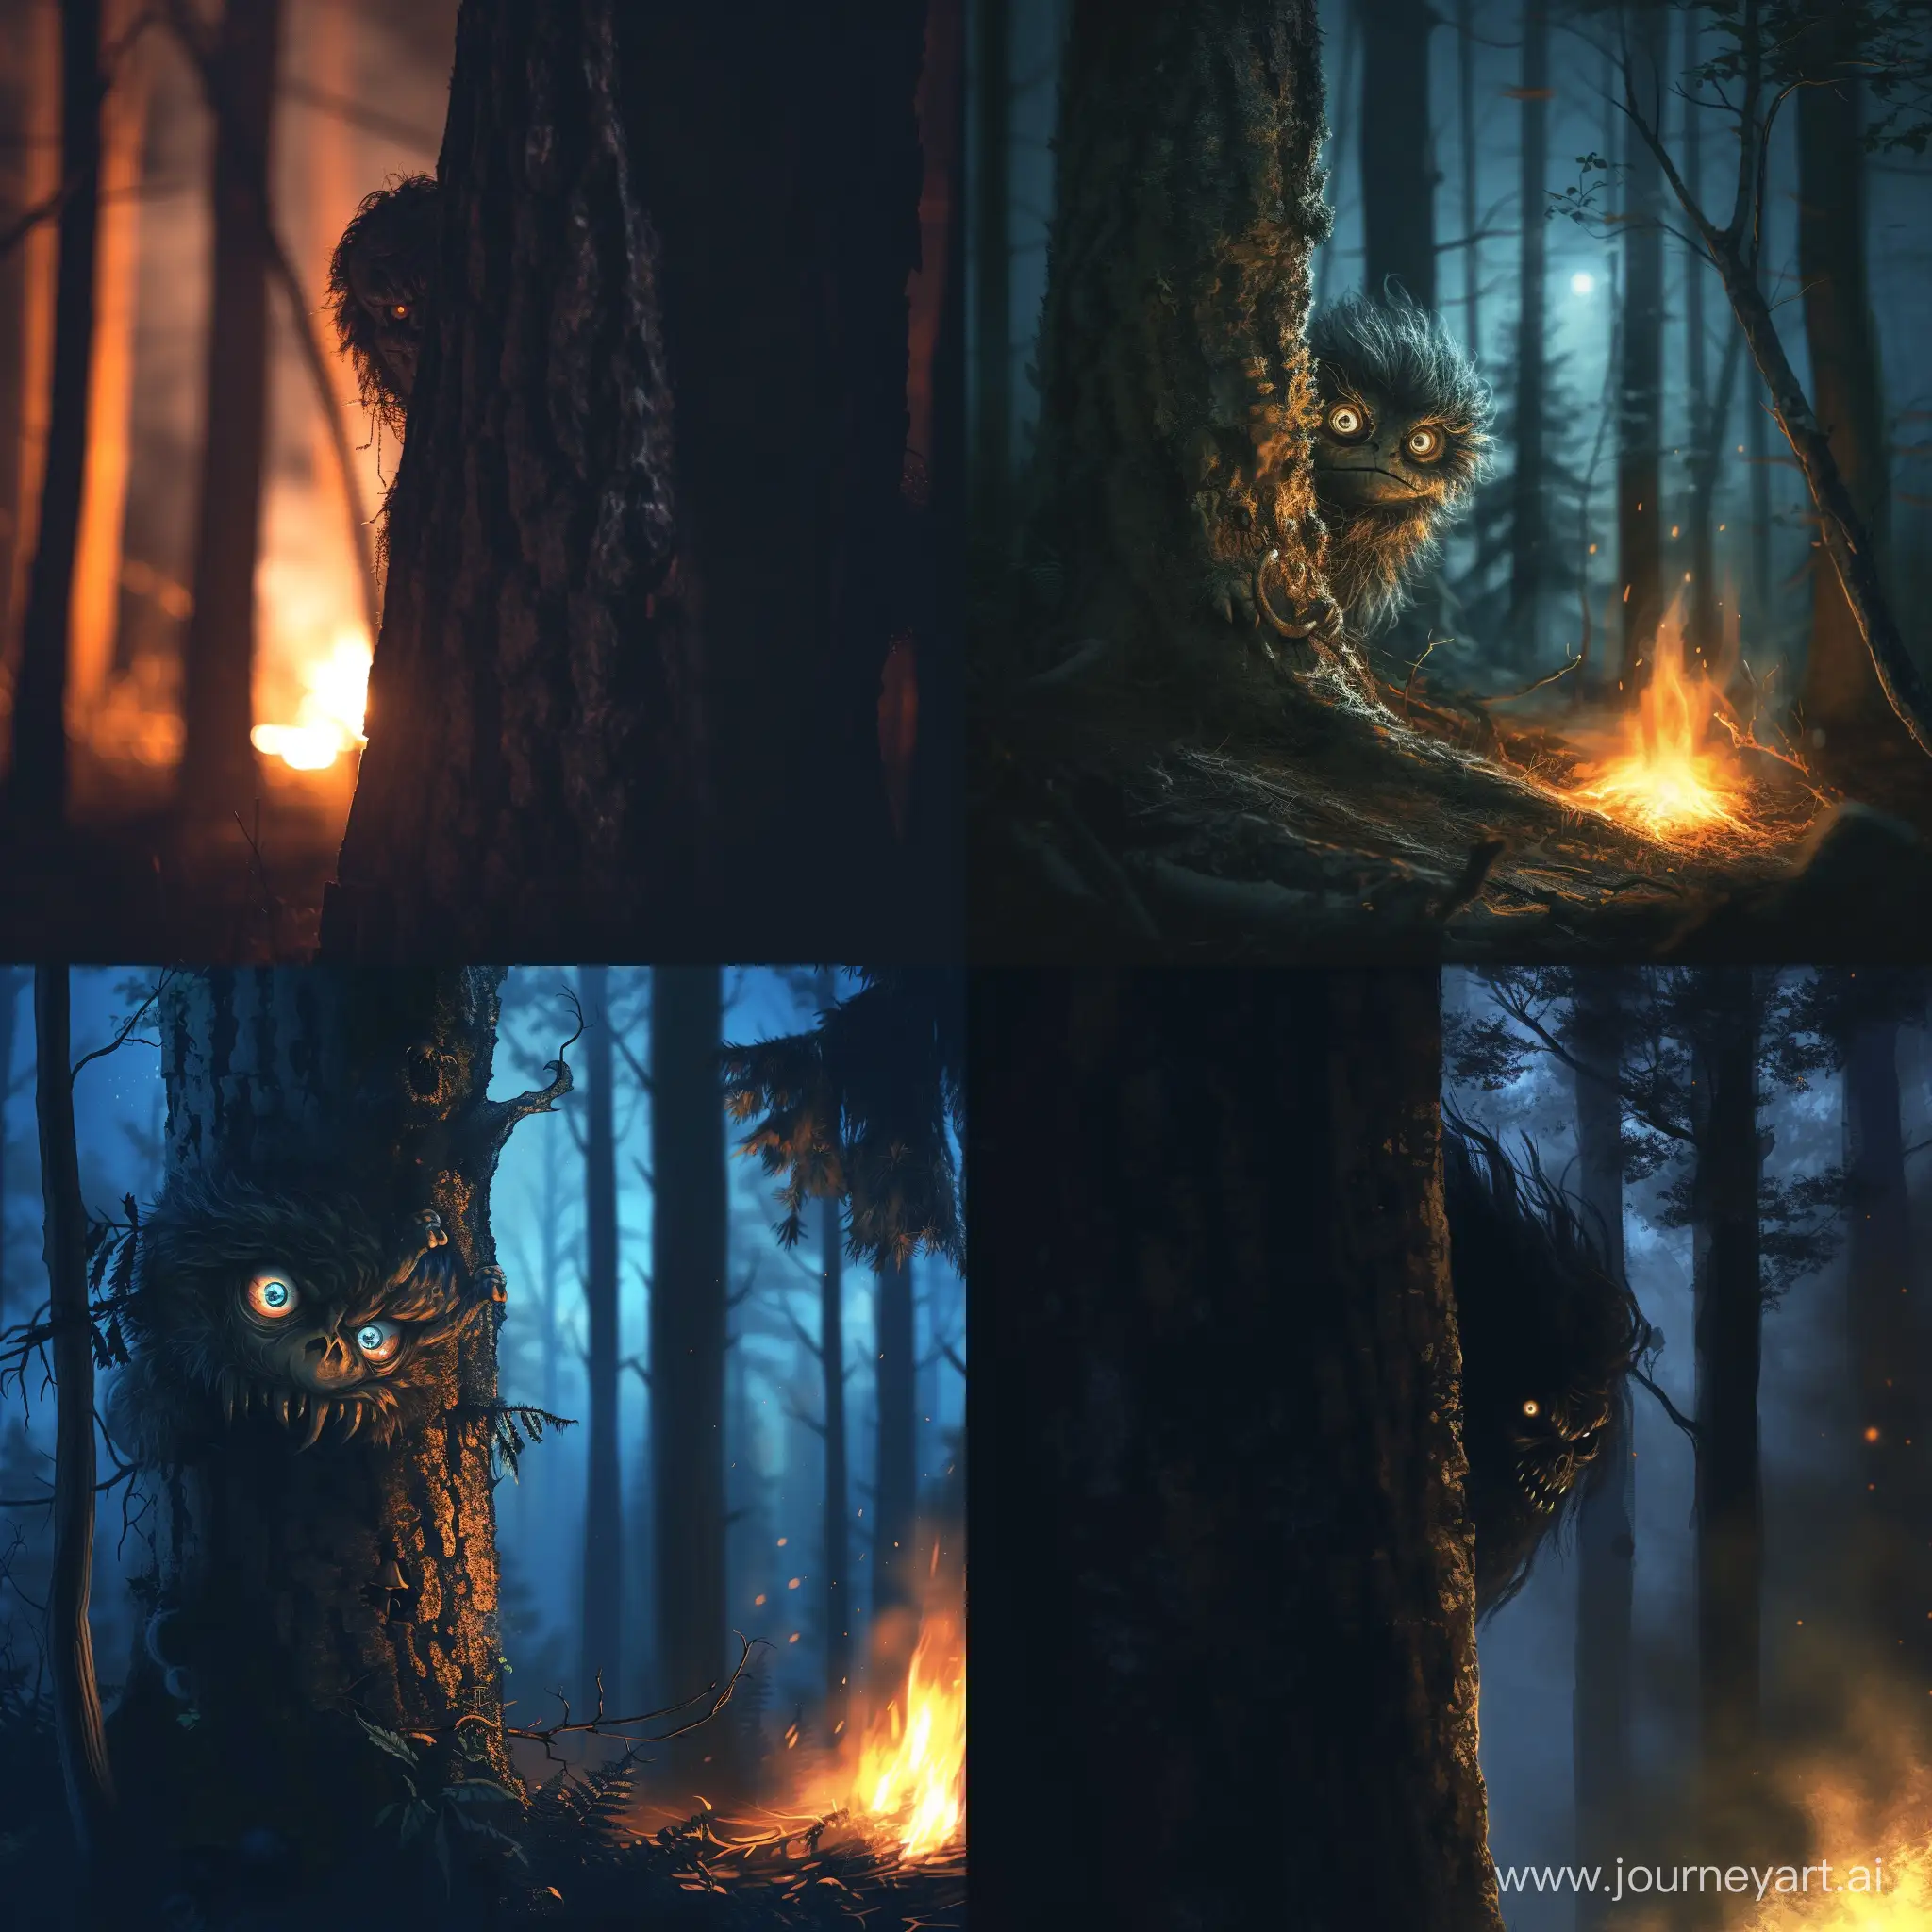 жуткий монстр смотрит из-за дерева в лесу ночью в свете костра